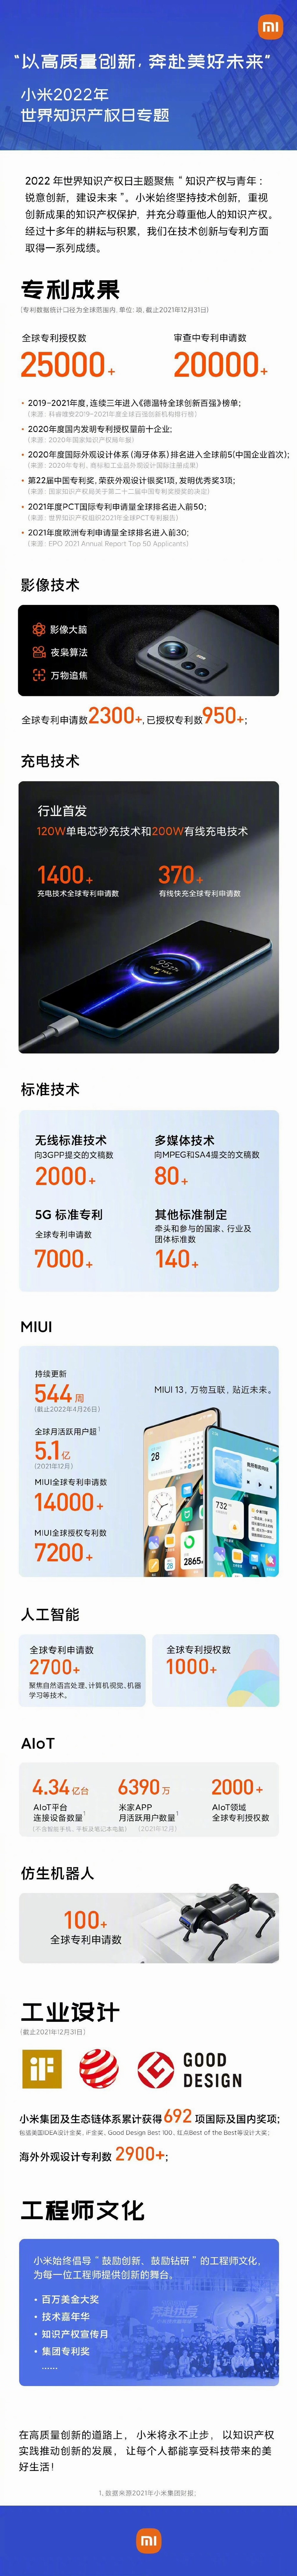 小米获得全球专利超两万件 还有两万正在审查中